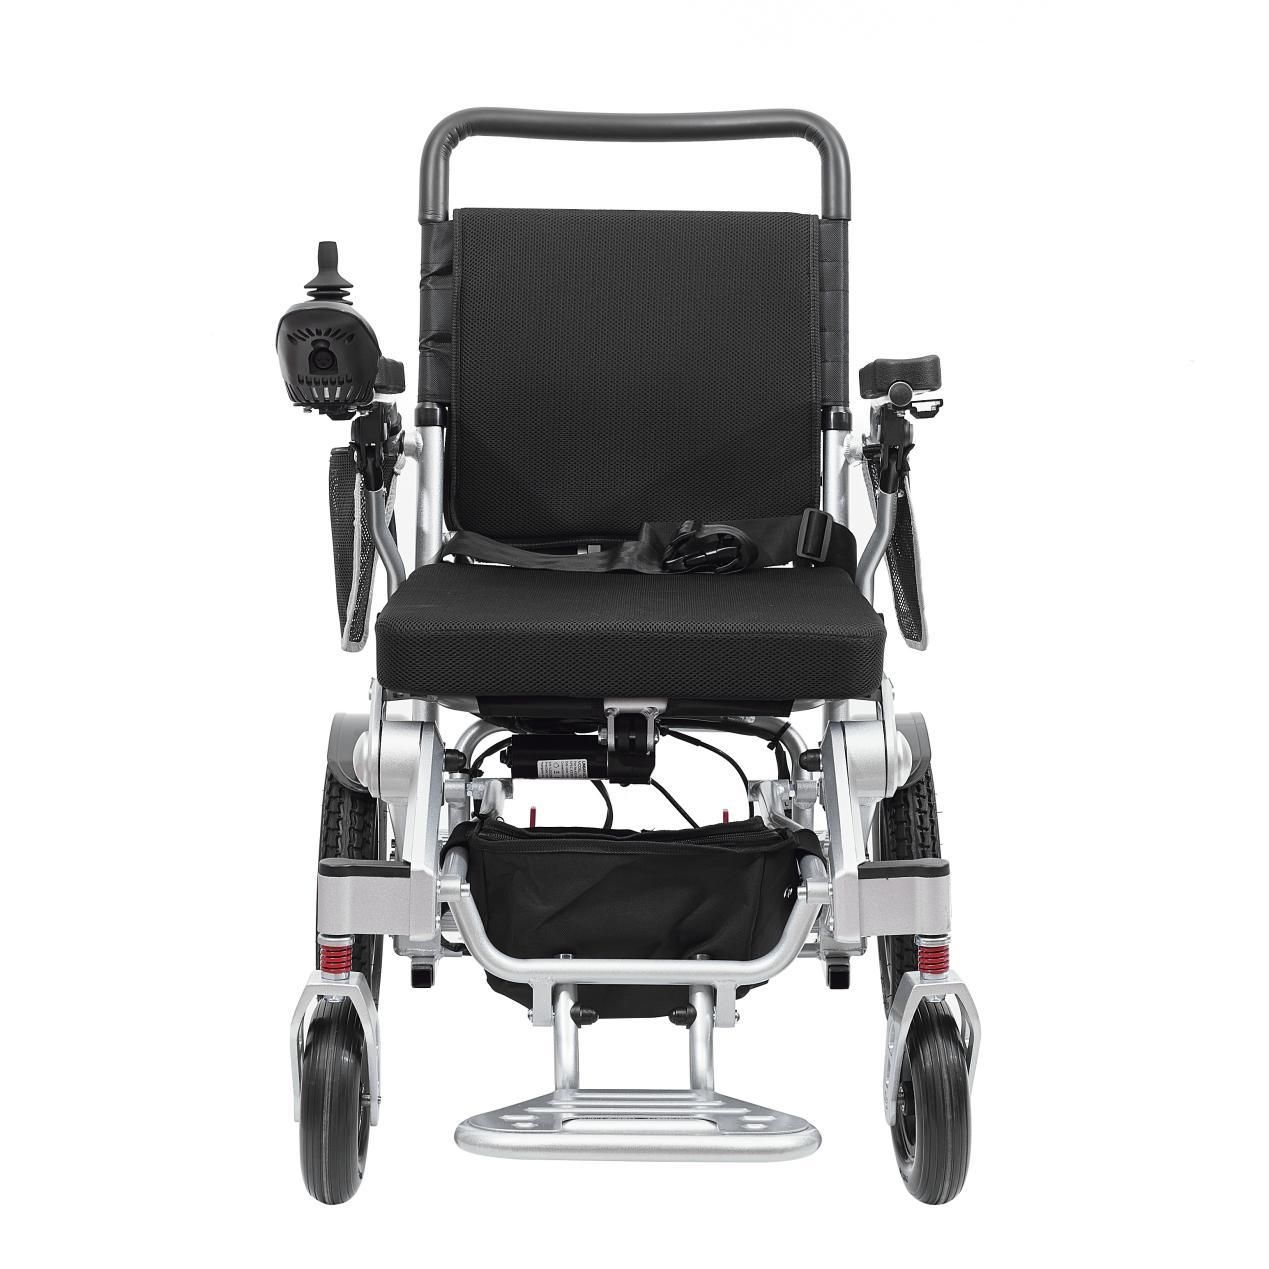 Welche Wartungsmethoden können die Lebensdauer eines Rollstuhls aus Aluminiumlegierung verlängern?